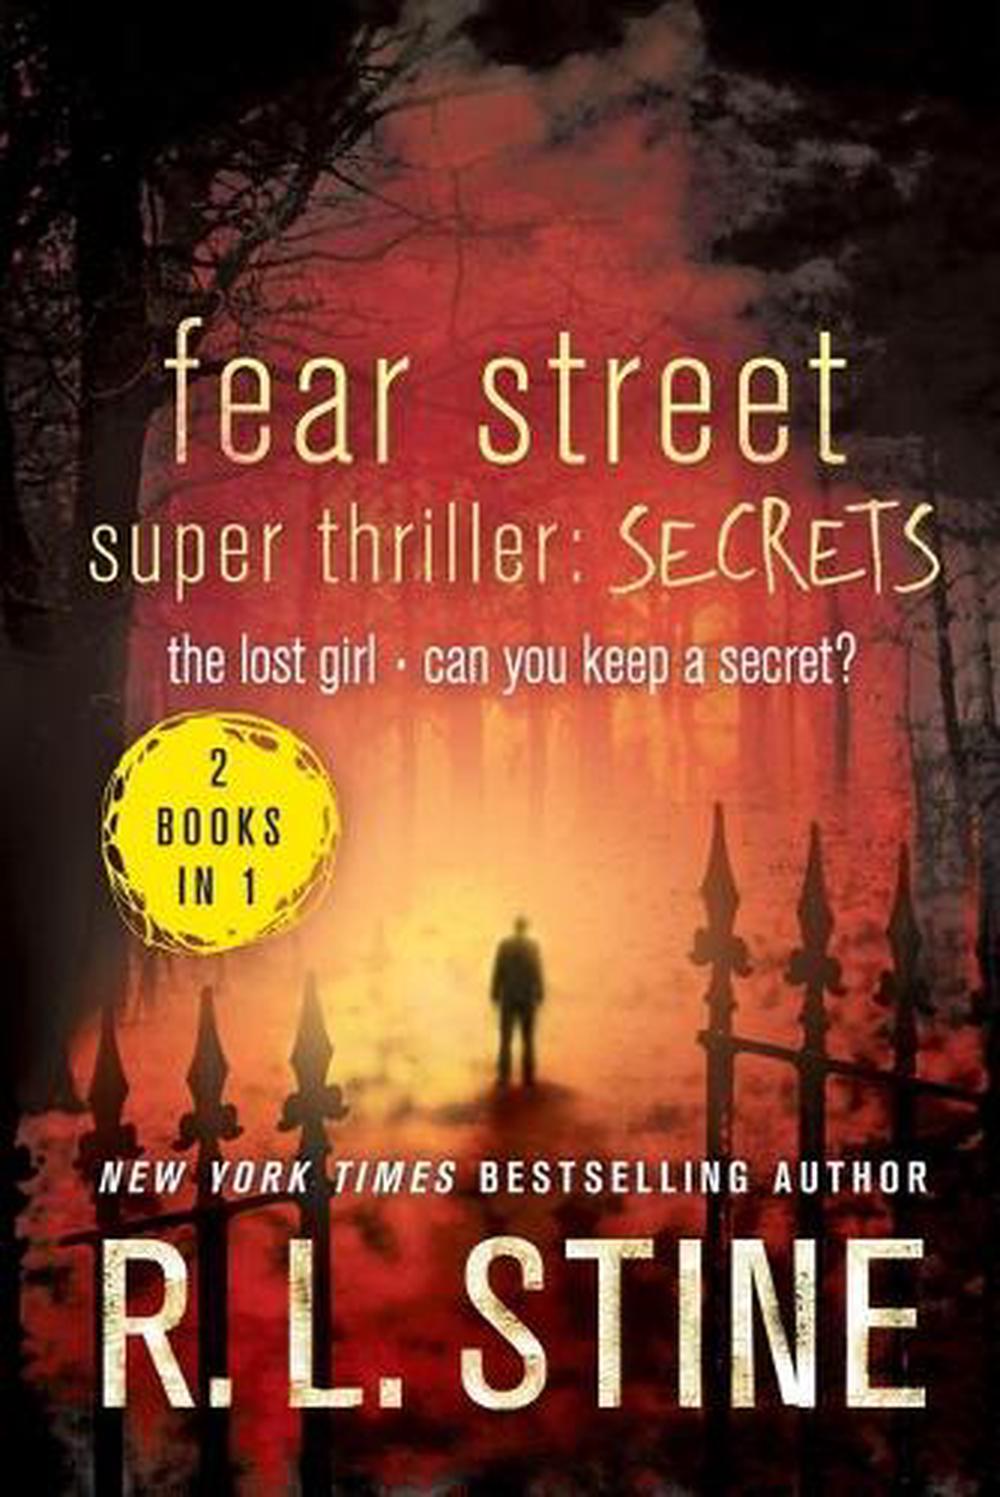 Fear Street Super Thriller by R.L. Stine